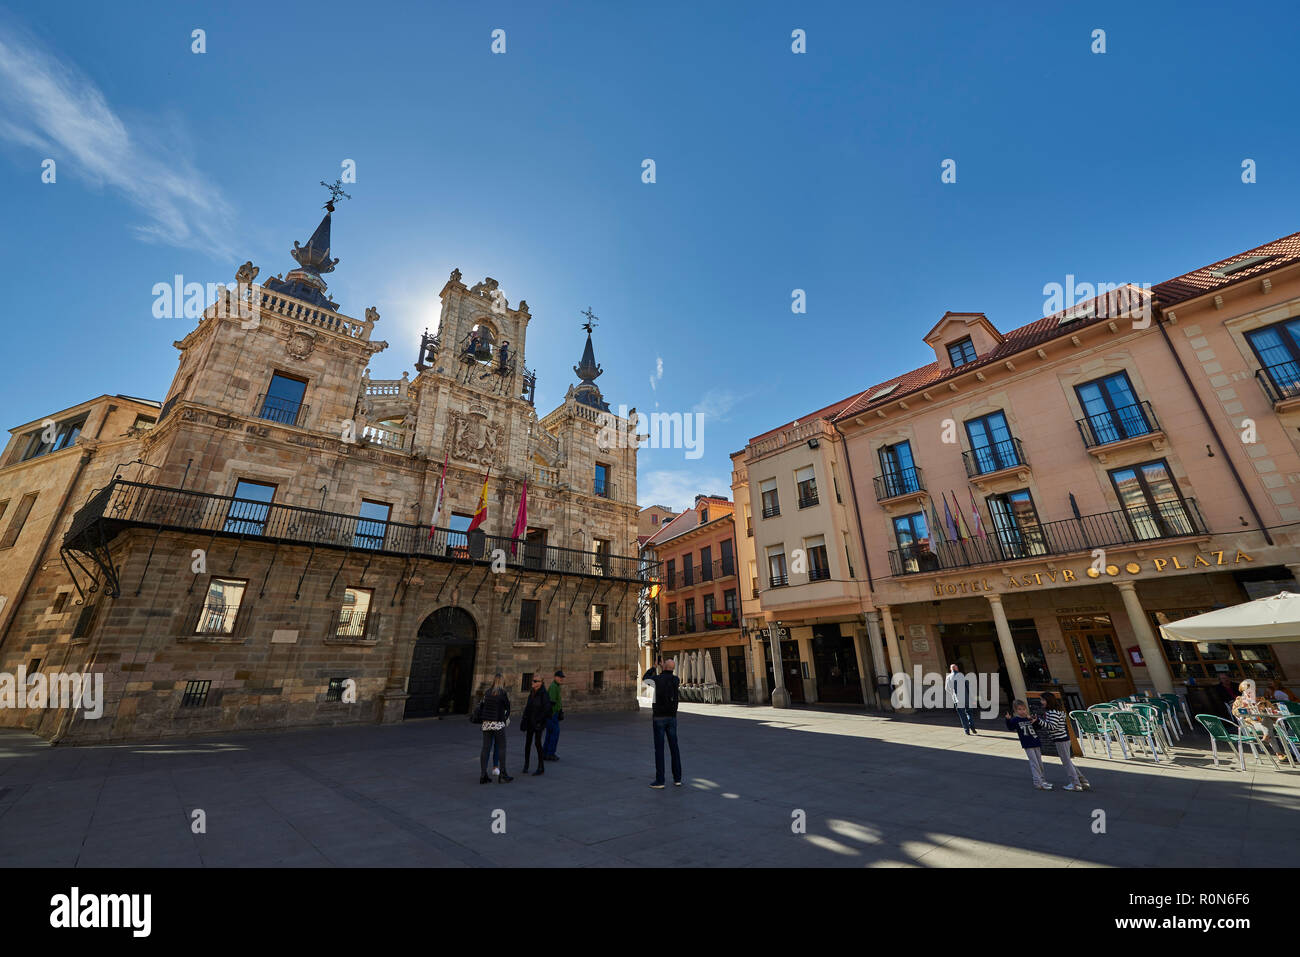 La place principale et de la Mairie, Astorga, Chemin de Saint Jacques, Leon, Province de Castille-león, Espagne, Europe Banque D'Images